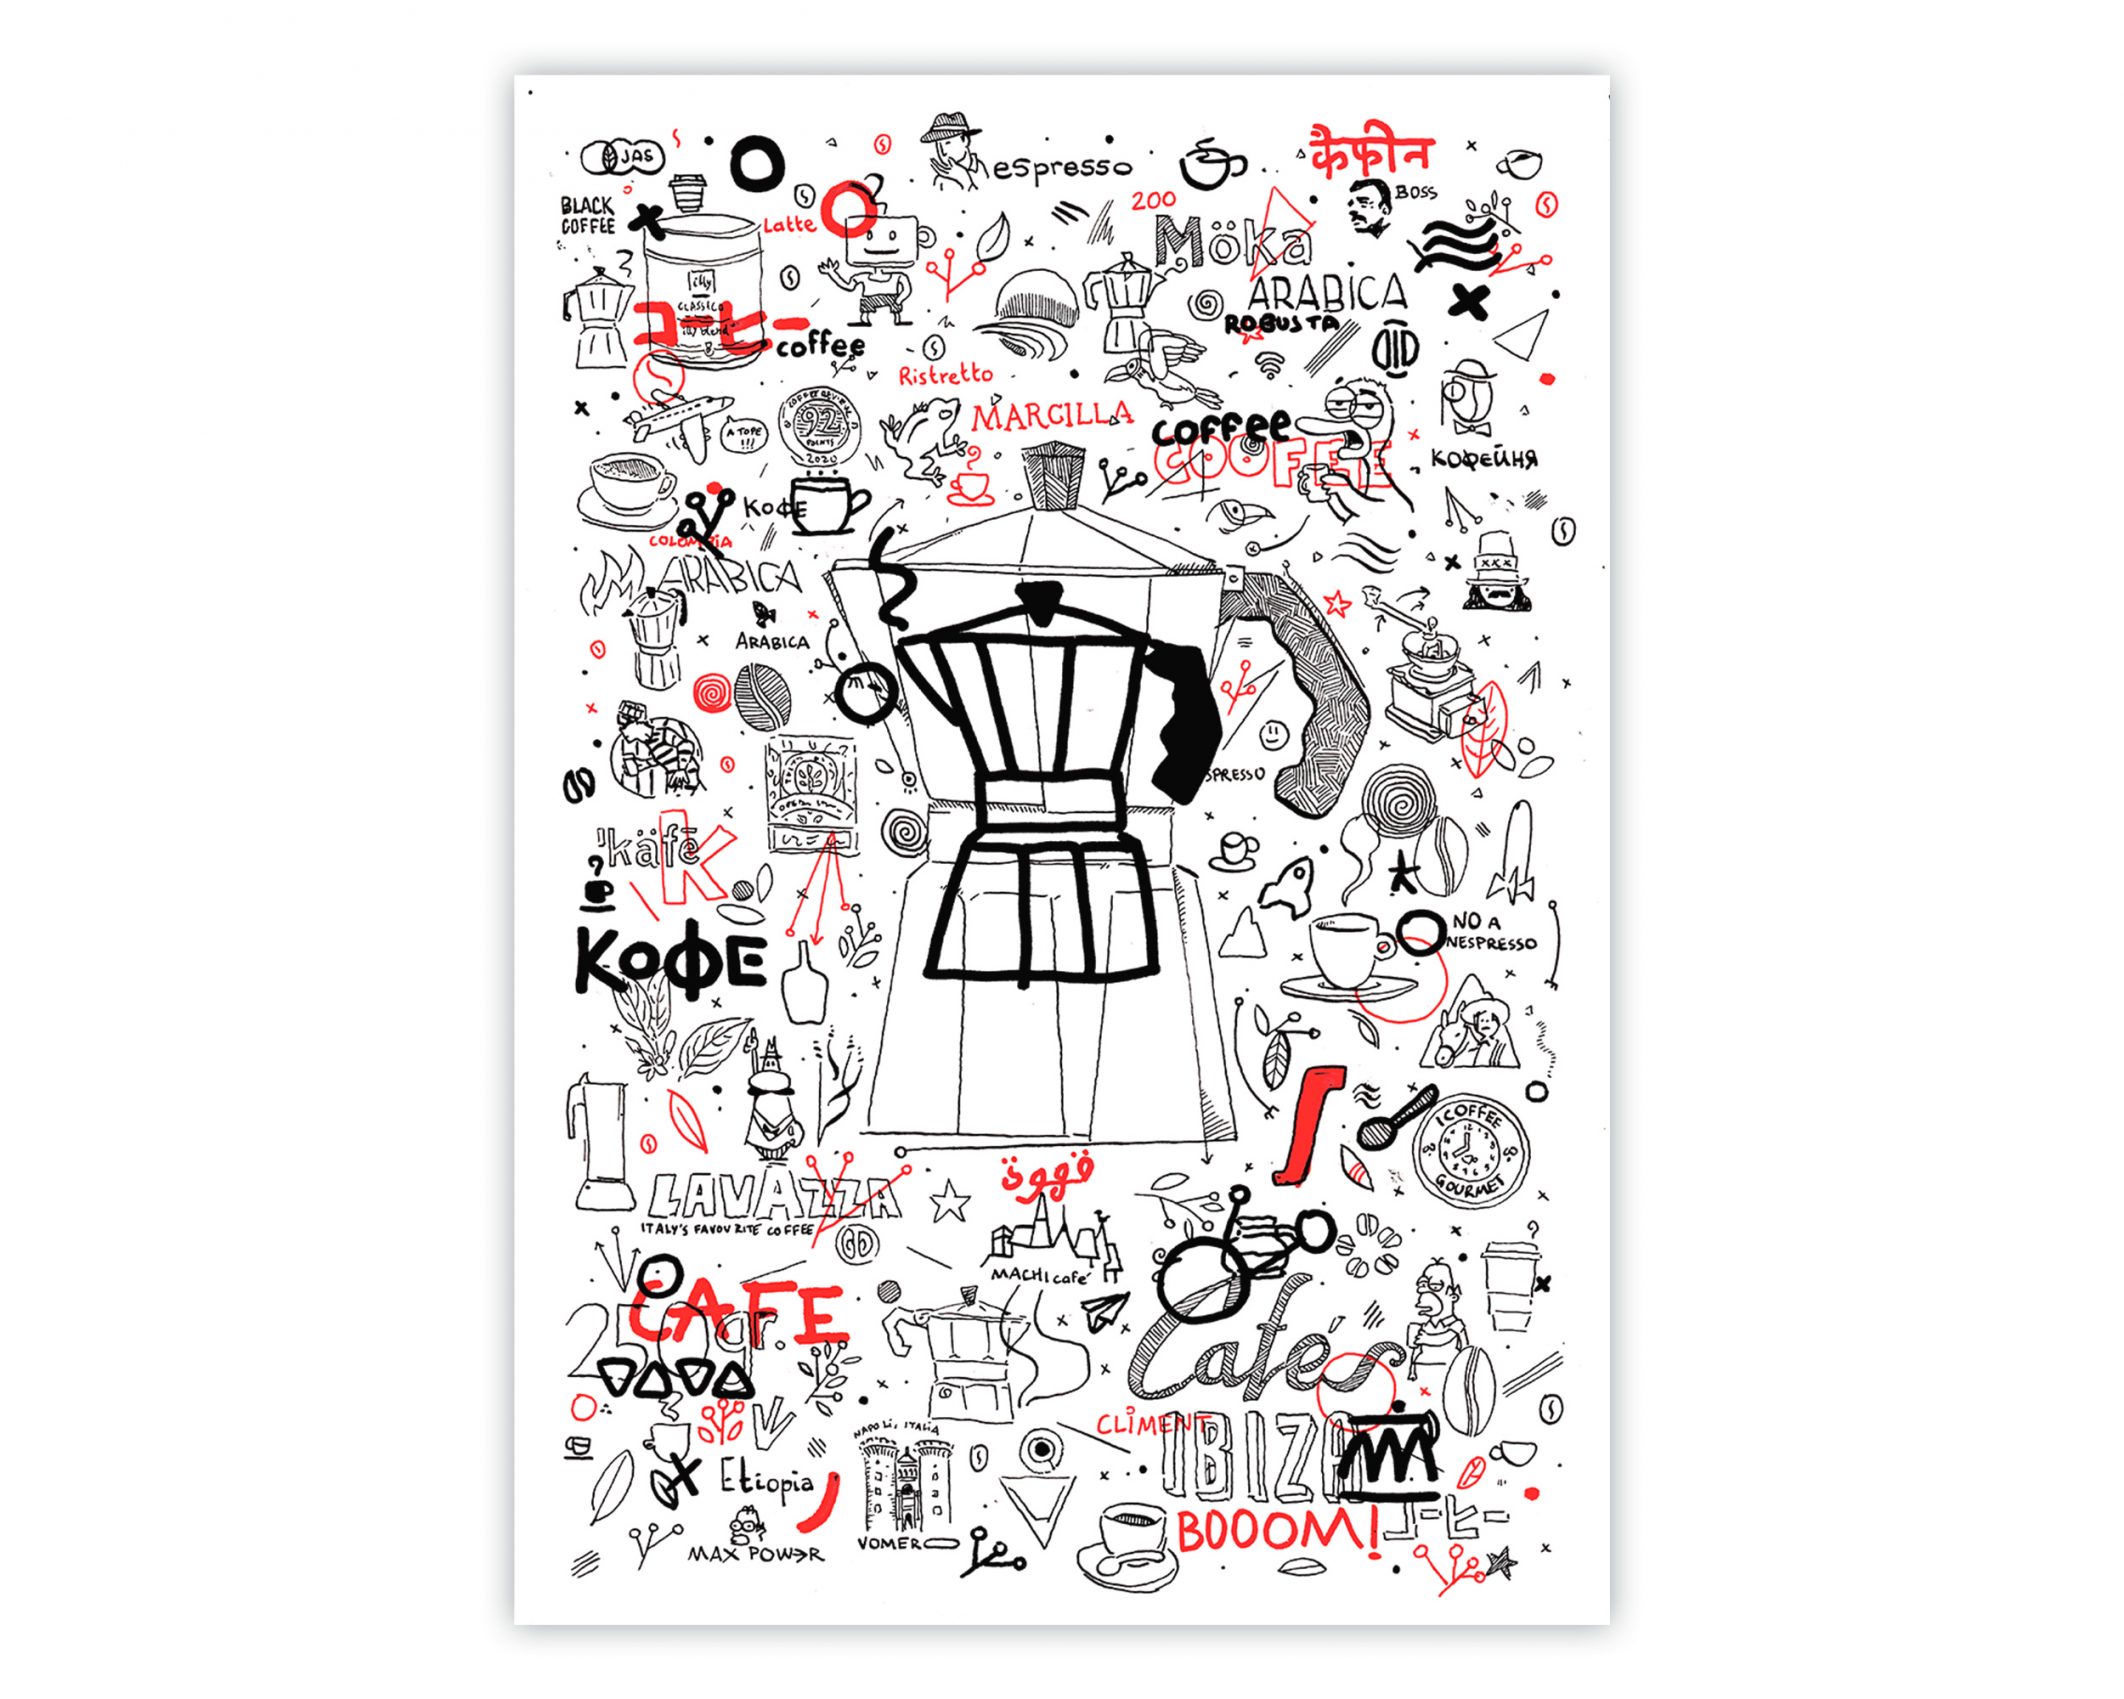 Ilustración con diferentes dibujos relacionados con el café: cafetera, lavazza, bialetti, cafés climents, illy...